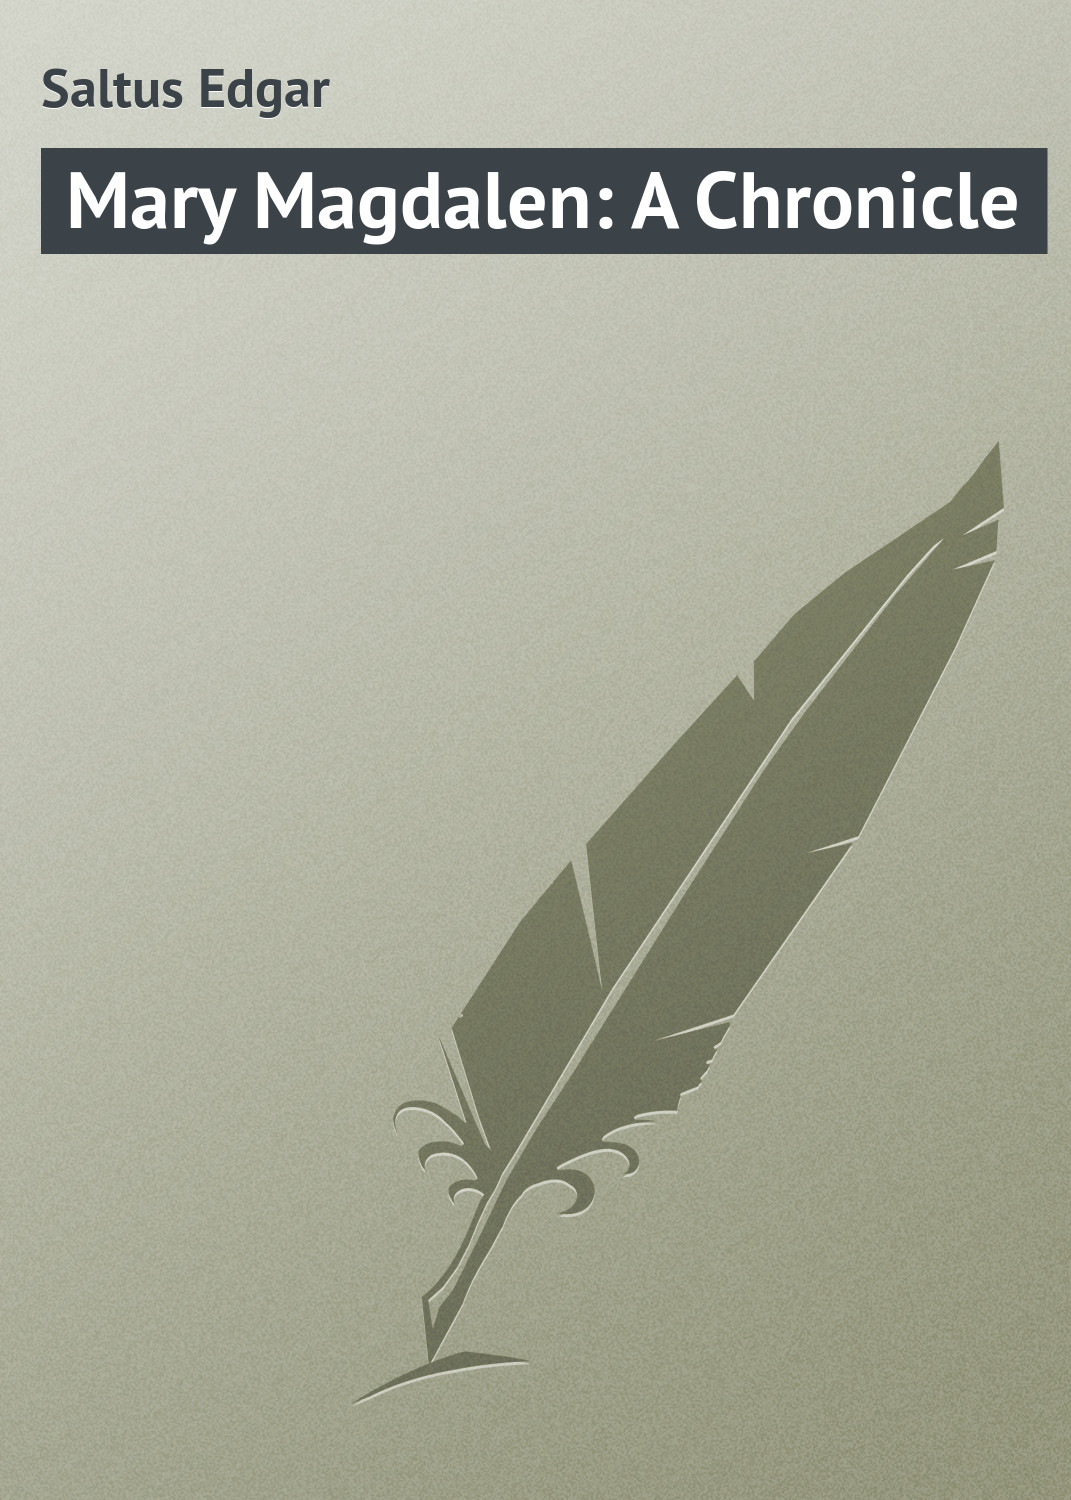 Книга Mary Magdalen: A Chronicle из серии , созданная Edgar Saltus, может относится к жанру Зарубежная классика. Стоимость электронной книги Mary Magdalen: A Chronicle с идентификатором 23167027 составляет 5.99 руб.